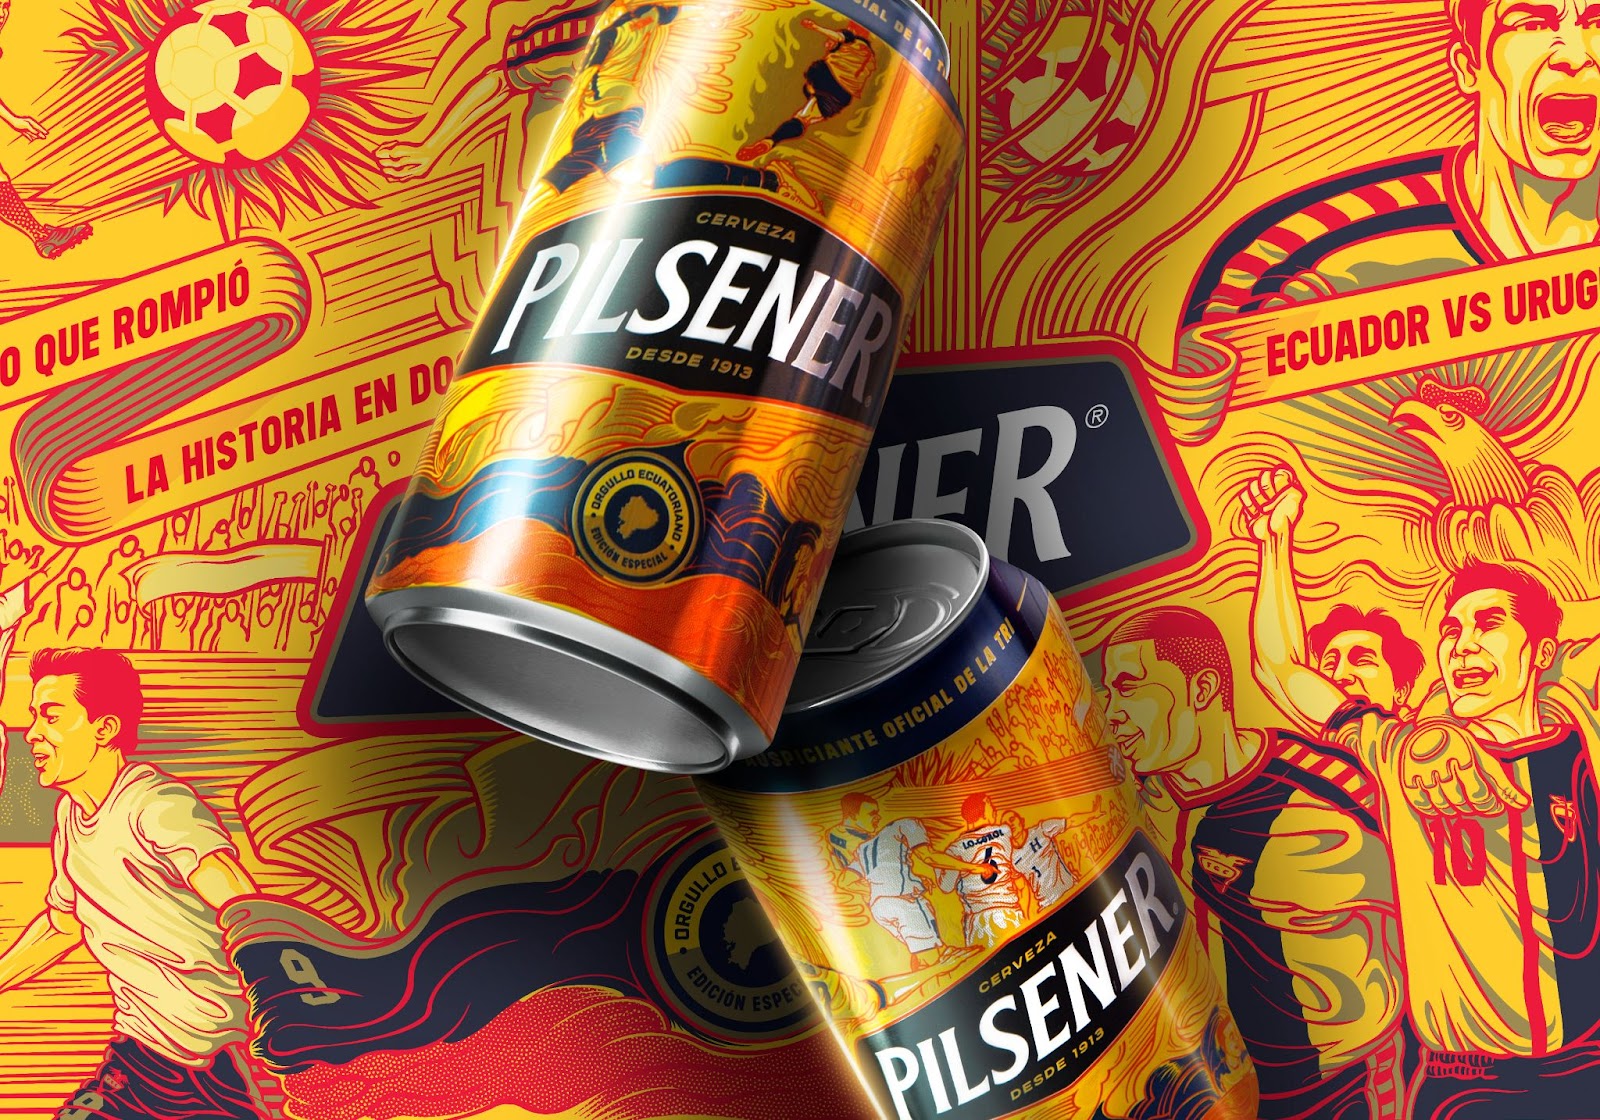 足球世界杯啤酒品牌包装设计作品,设计精美的啤酒包装设计。